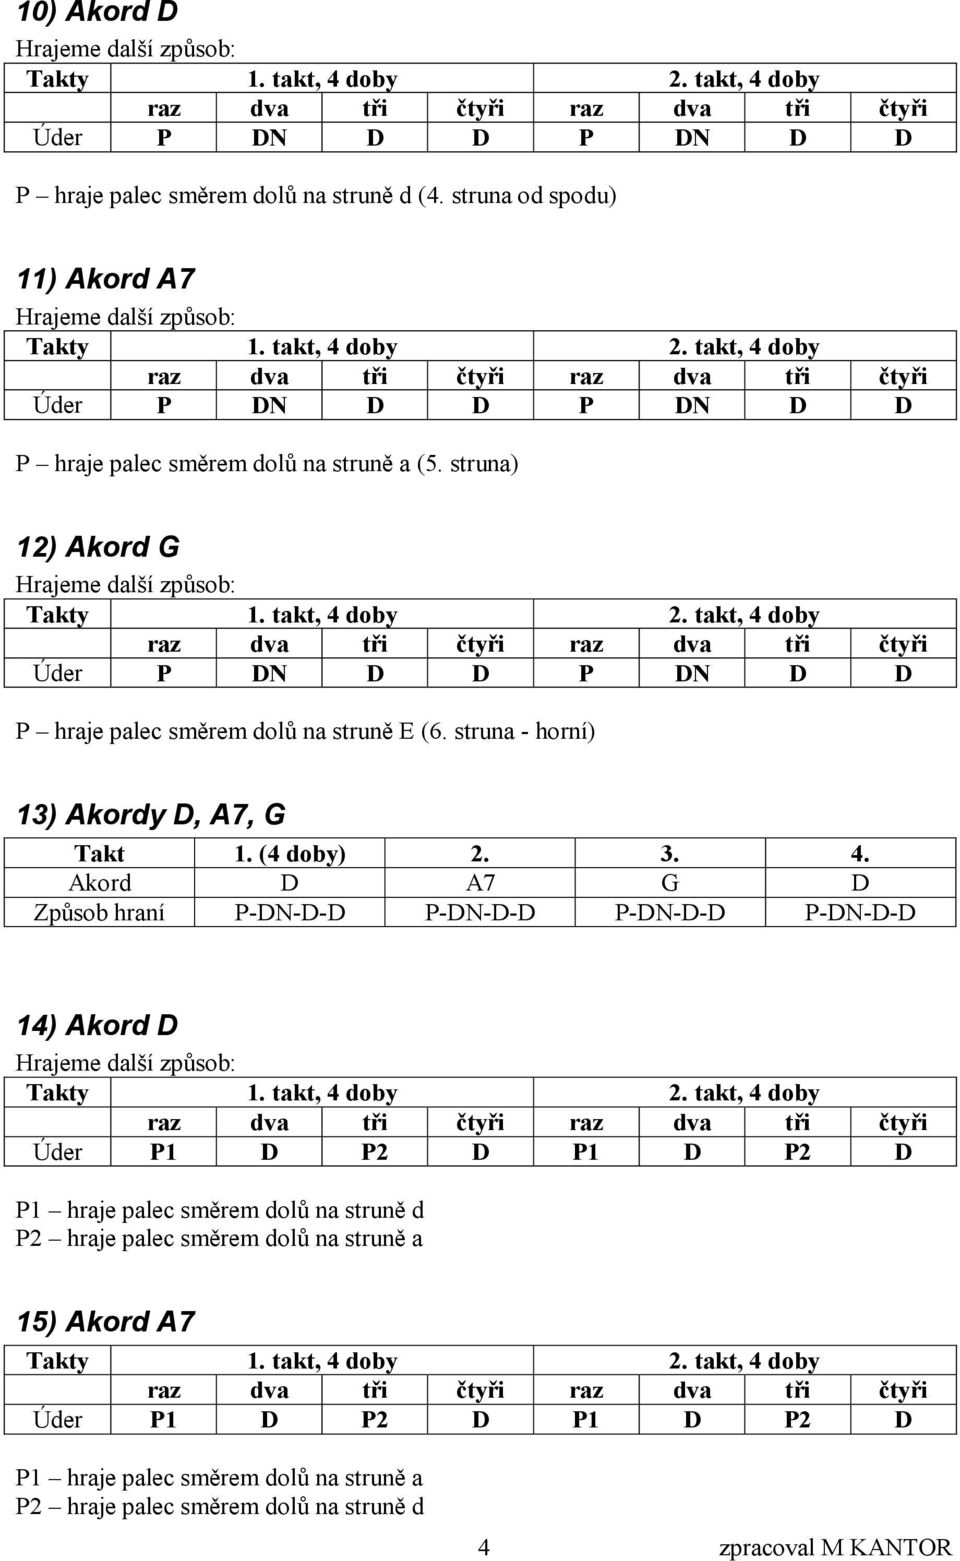 takt, 4 doby 2. takt, 4 doby Úder P1 D P2 D P1 D P2 D P1 hraje palec směrem dolů na struně d P2 hraje palec směrem dolů na struně a 15) Akord A7 y 1. takt, 4 doby 2.